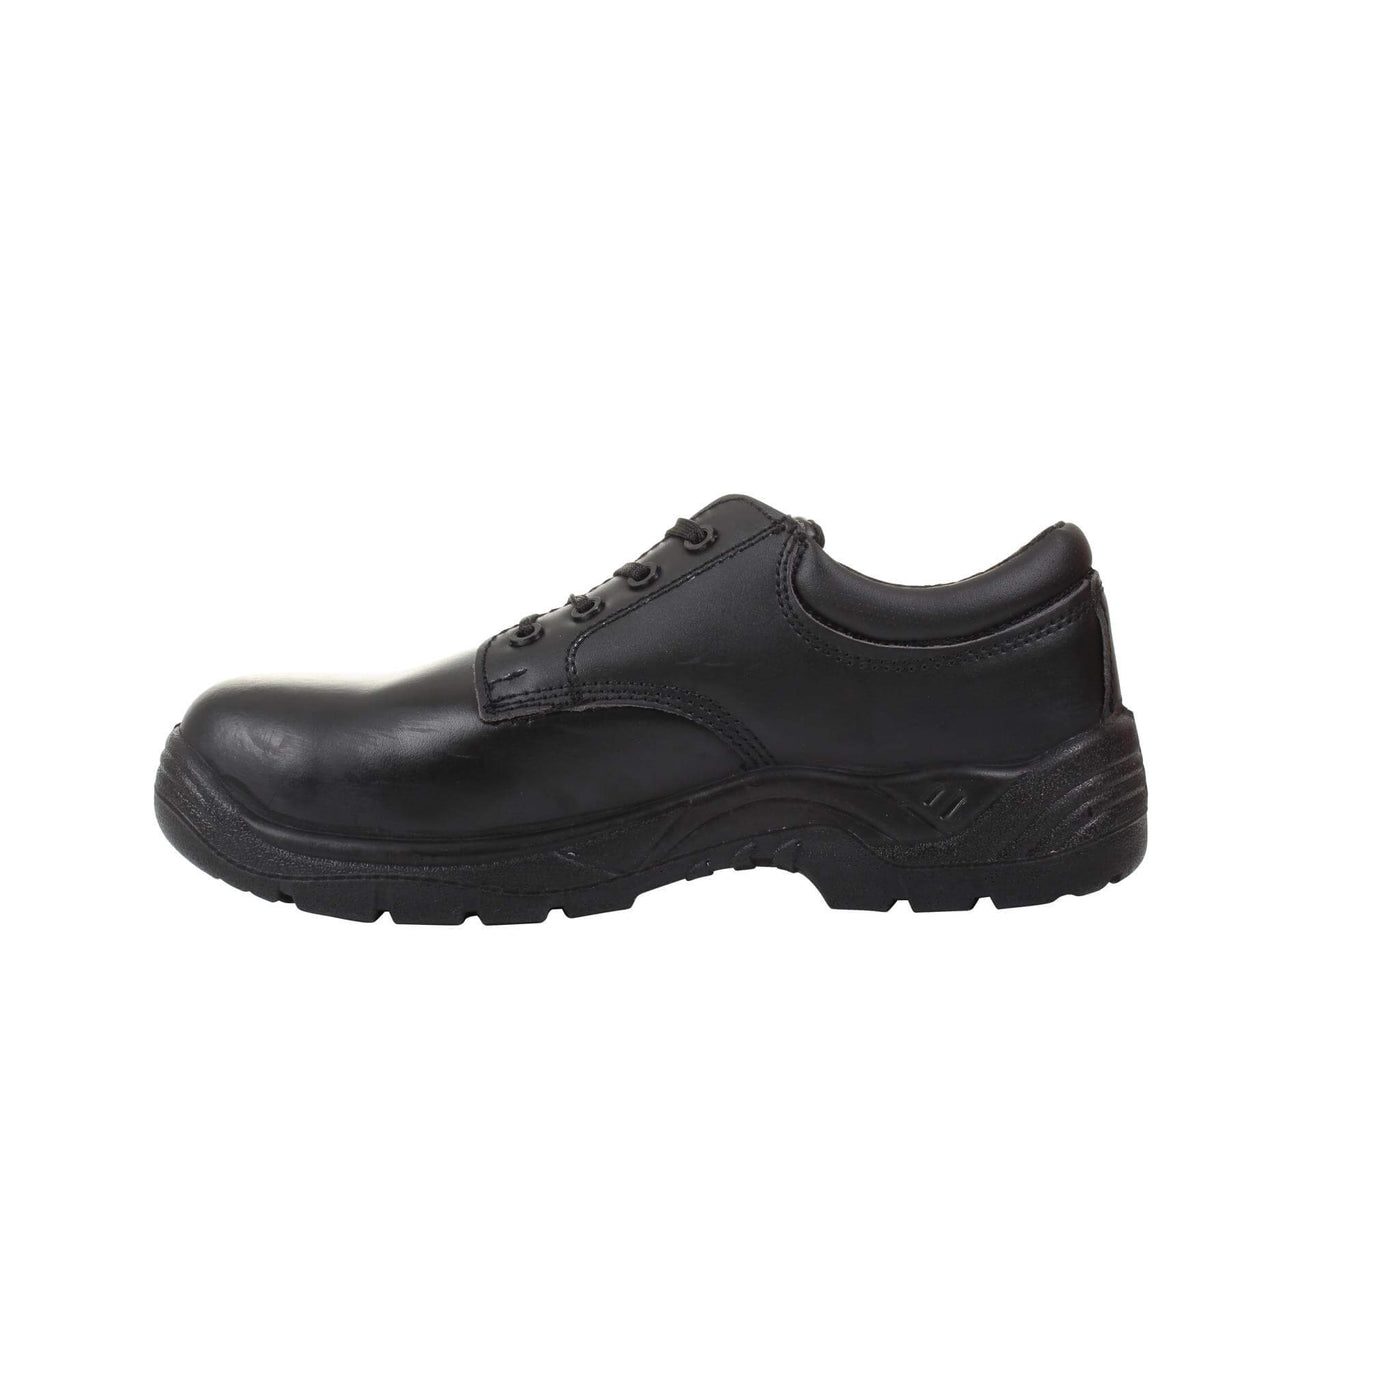 Blackrock Atlas Composite Safety Shoes Black 3#colour_black